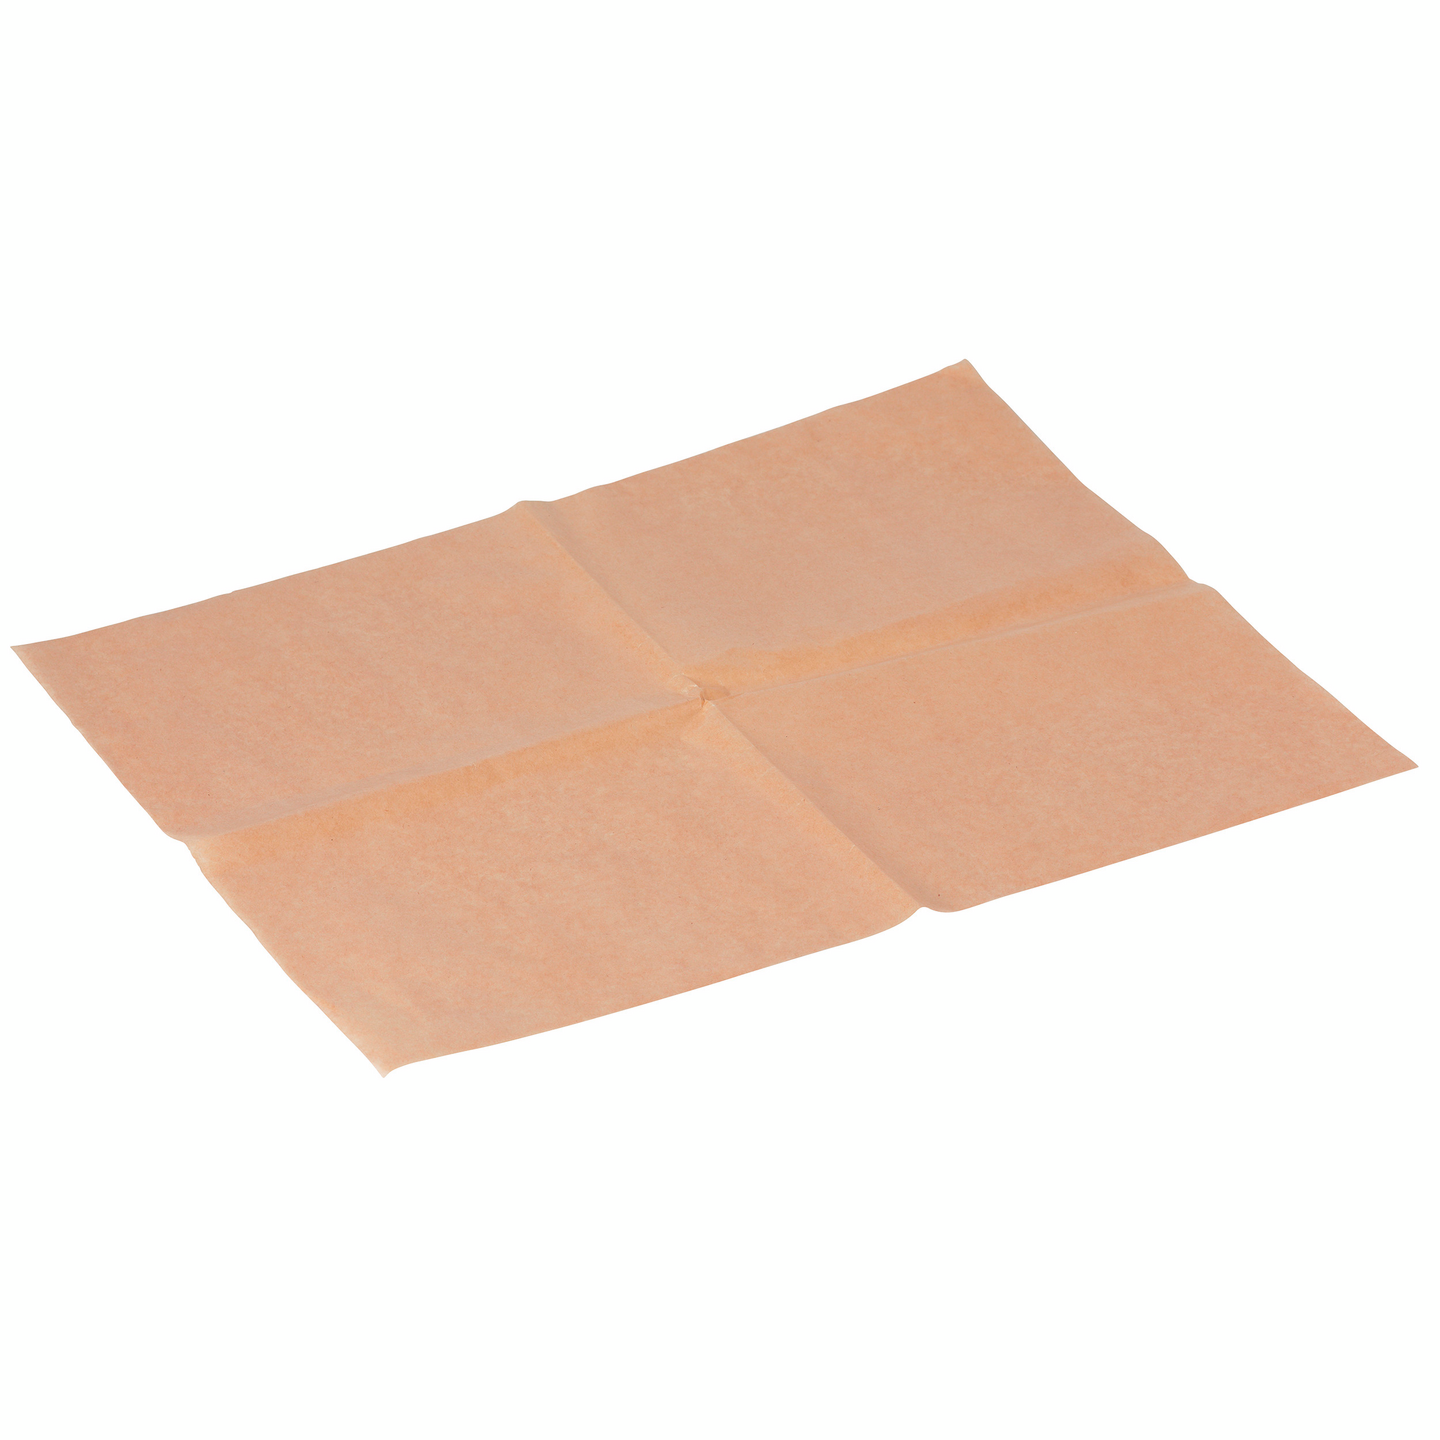 Biopak käärepaperi 330x410mm ruskea paperi/PE 1000kpl